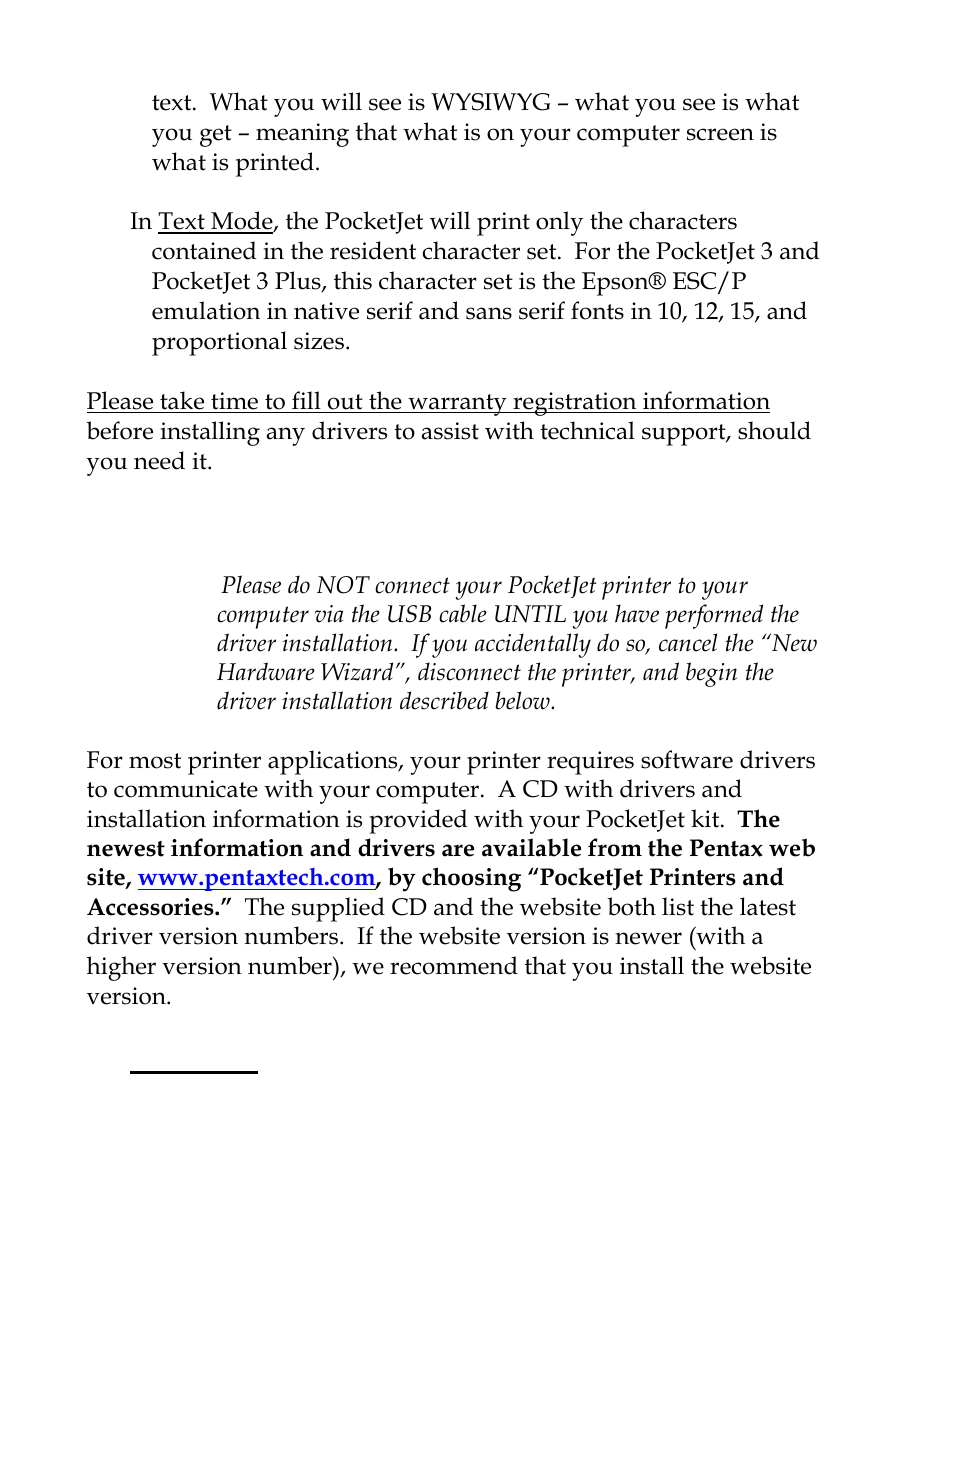 Driver installation, Cd install | Pentax PocketJet 3 User Manual | Page 18  / 98